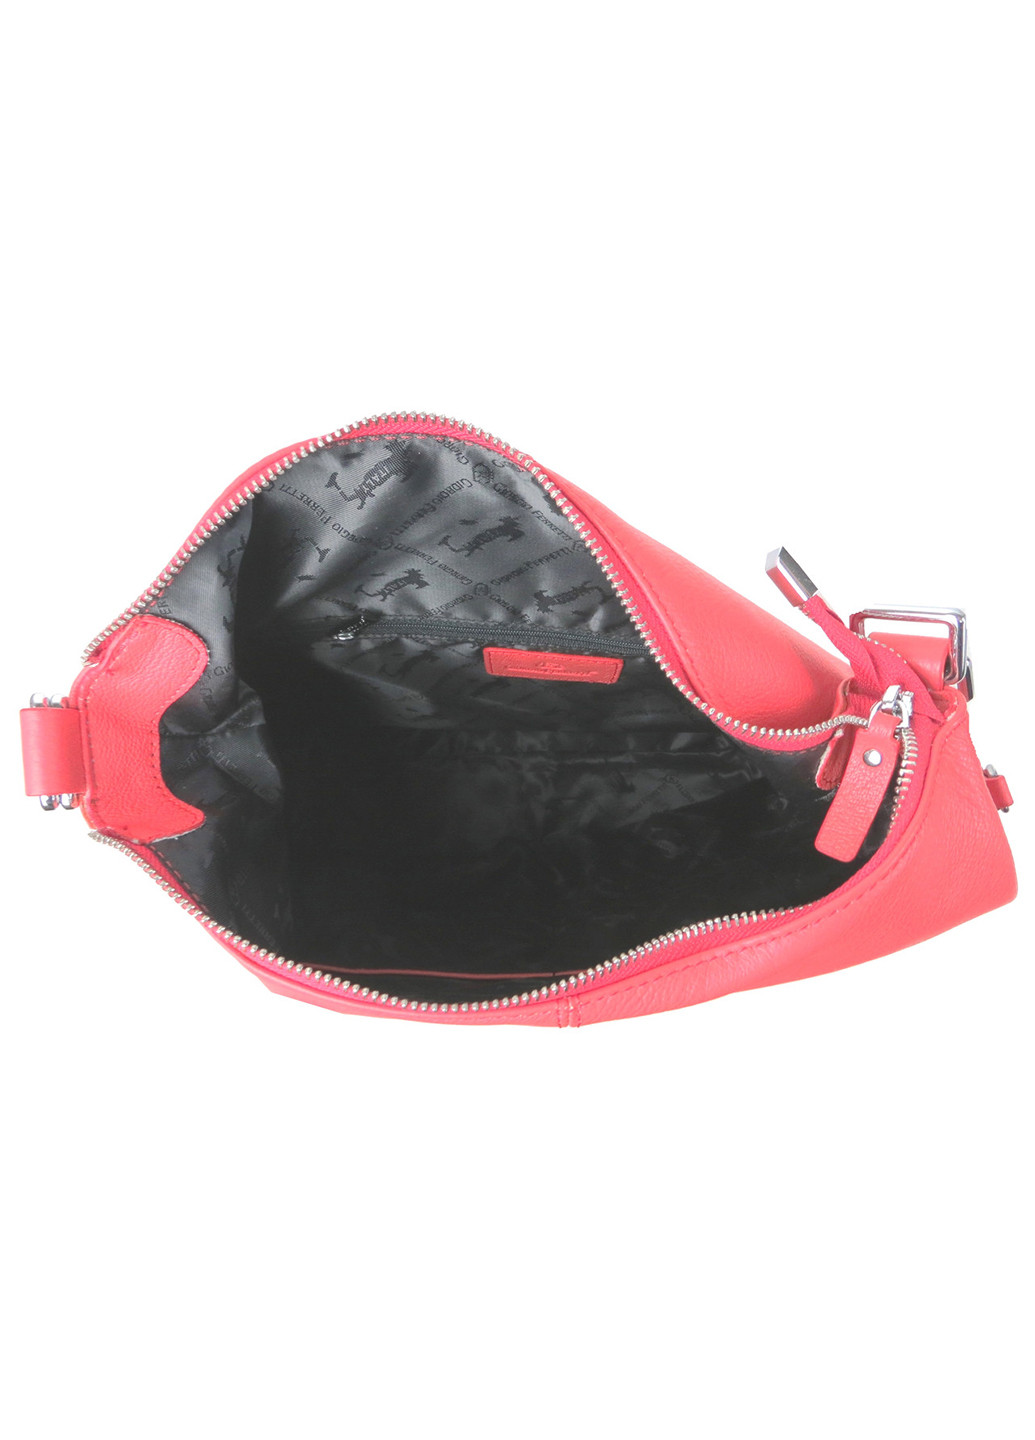 Женская кожаная сумка - рюкзак траснформер 34х31х12,5 см Giorgio Ferretti (257046507)